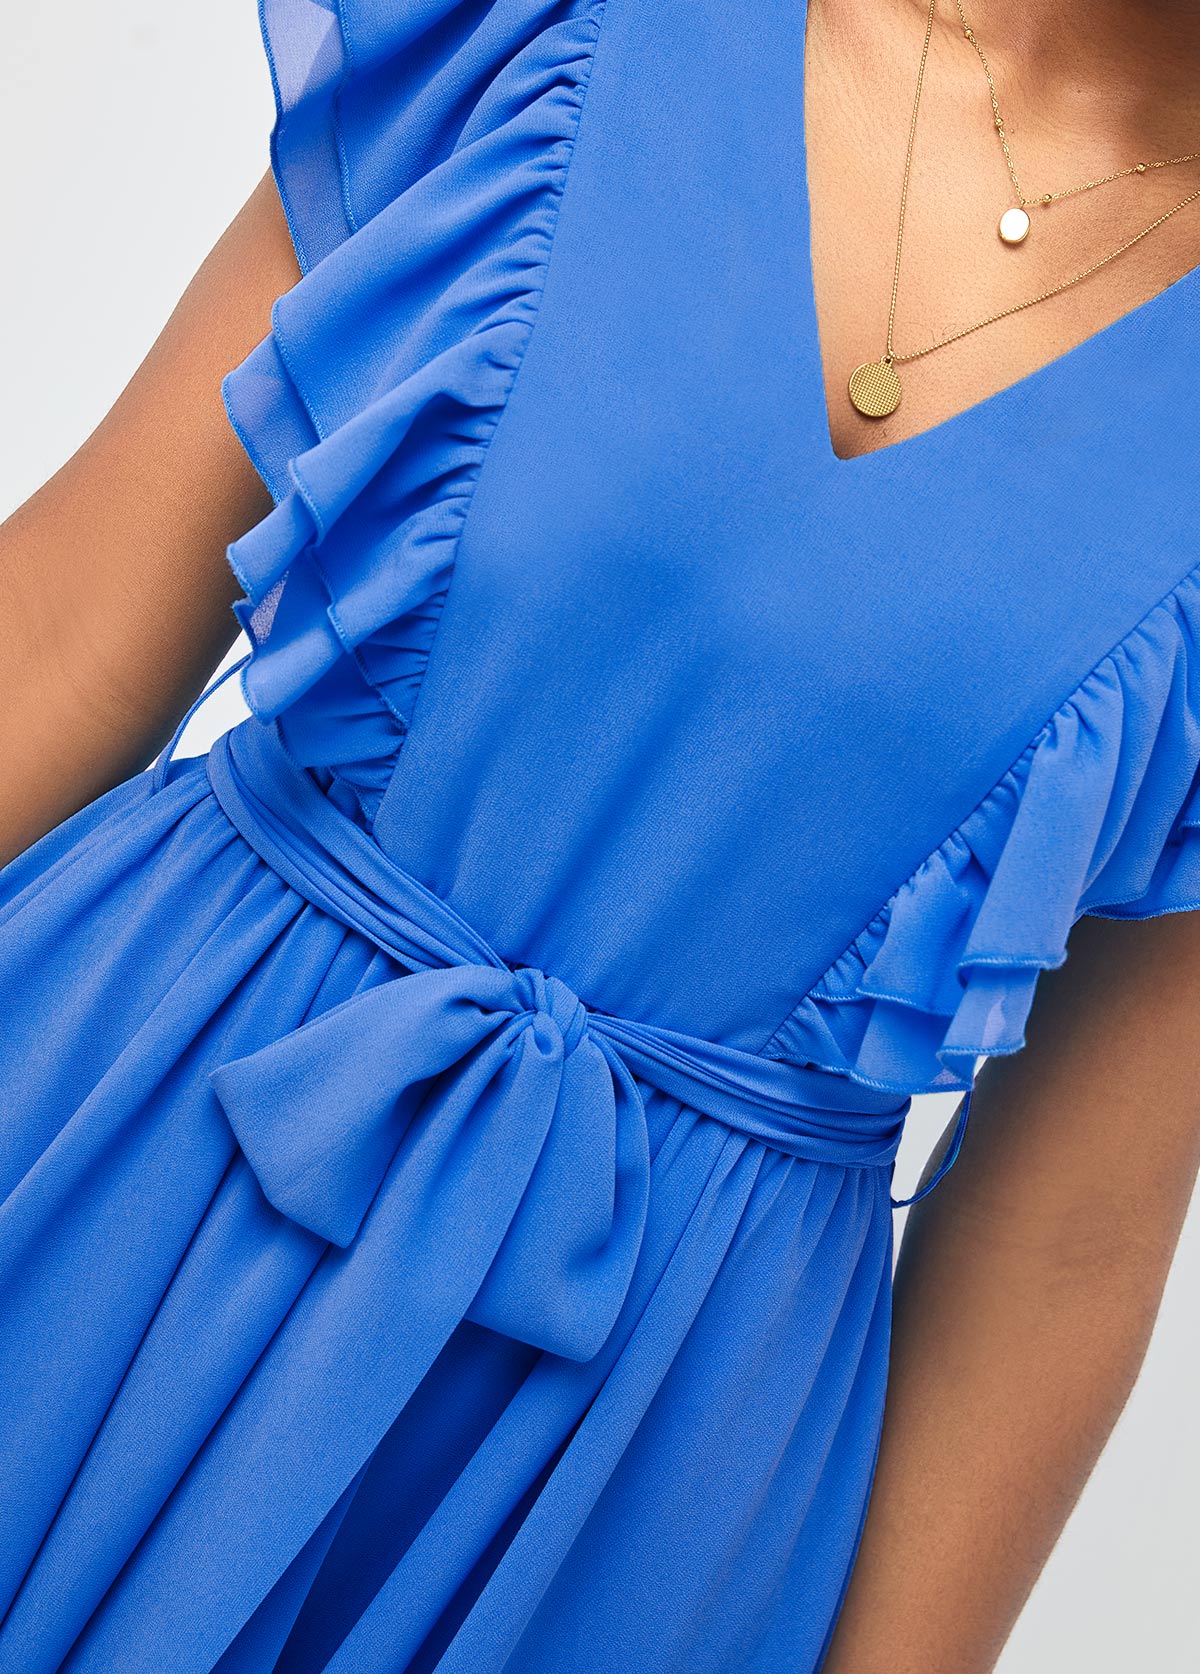 Blue Asymmetric Hem Belted V Neck Dress